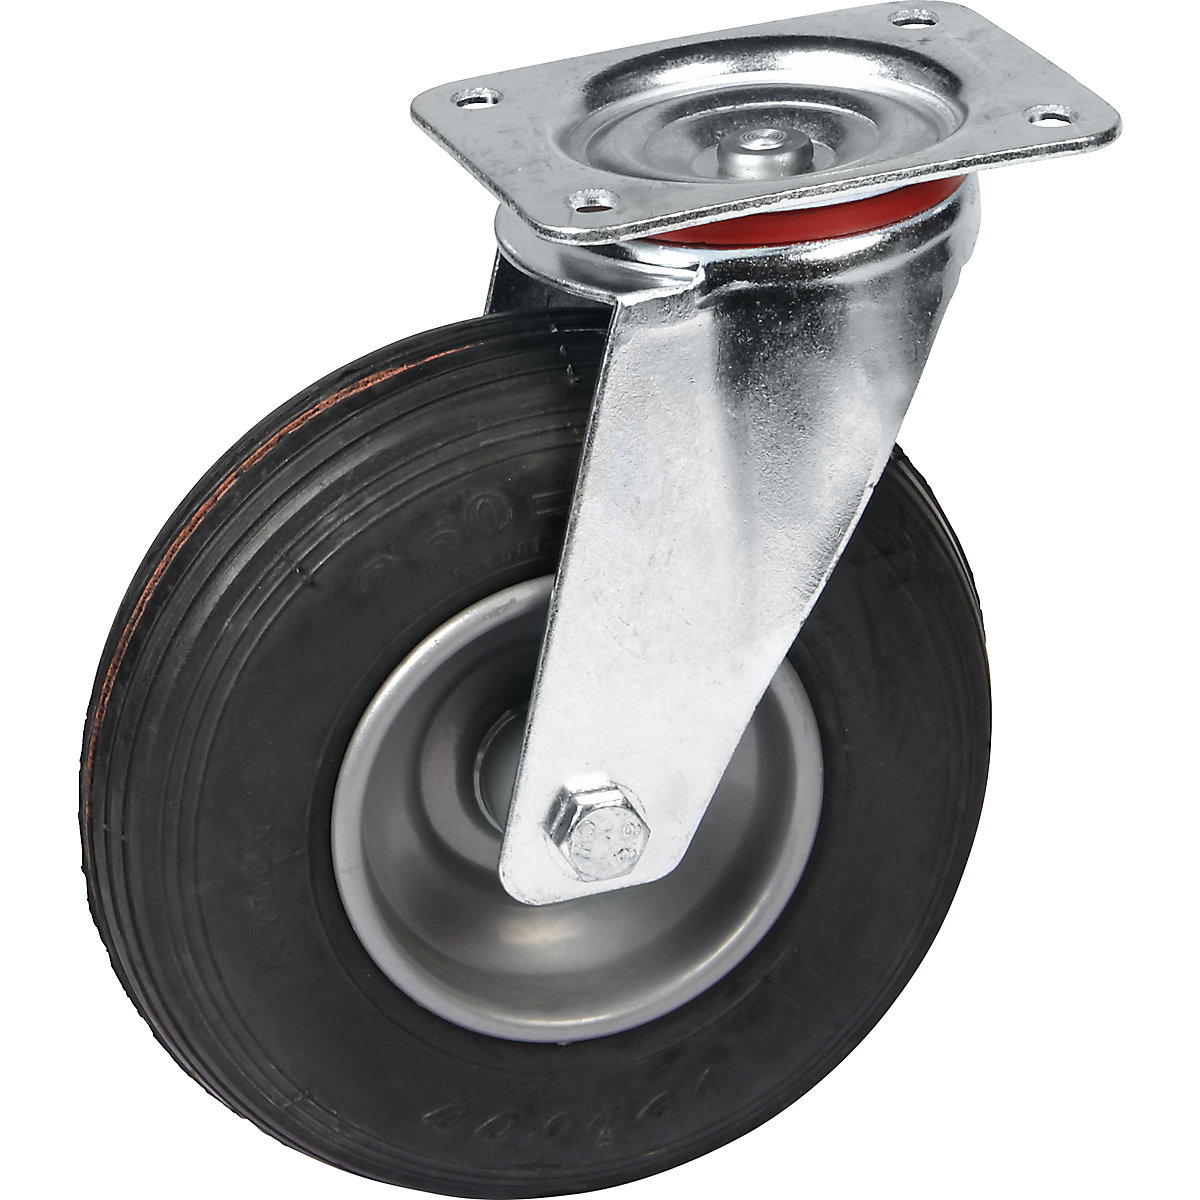 Pneumatic tyre on sheet steel rim, wheel Ø x width 200 x 50 mm, swivel castor, with roller bearings-3